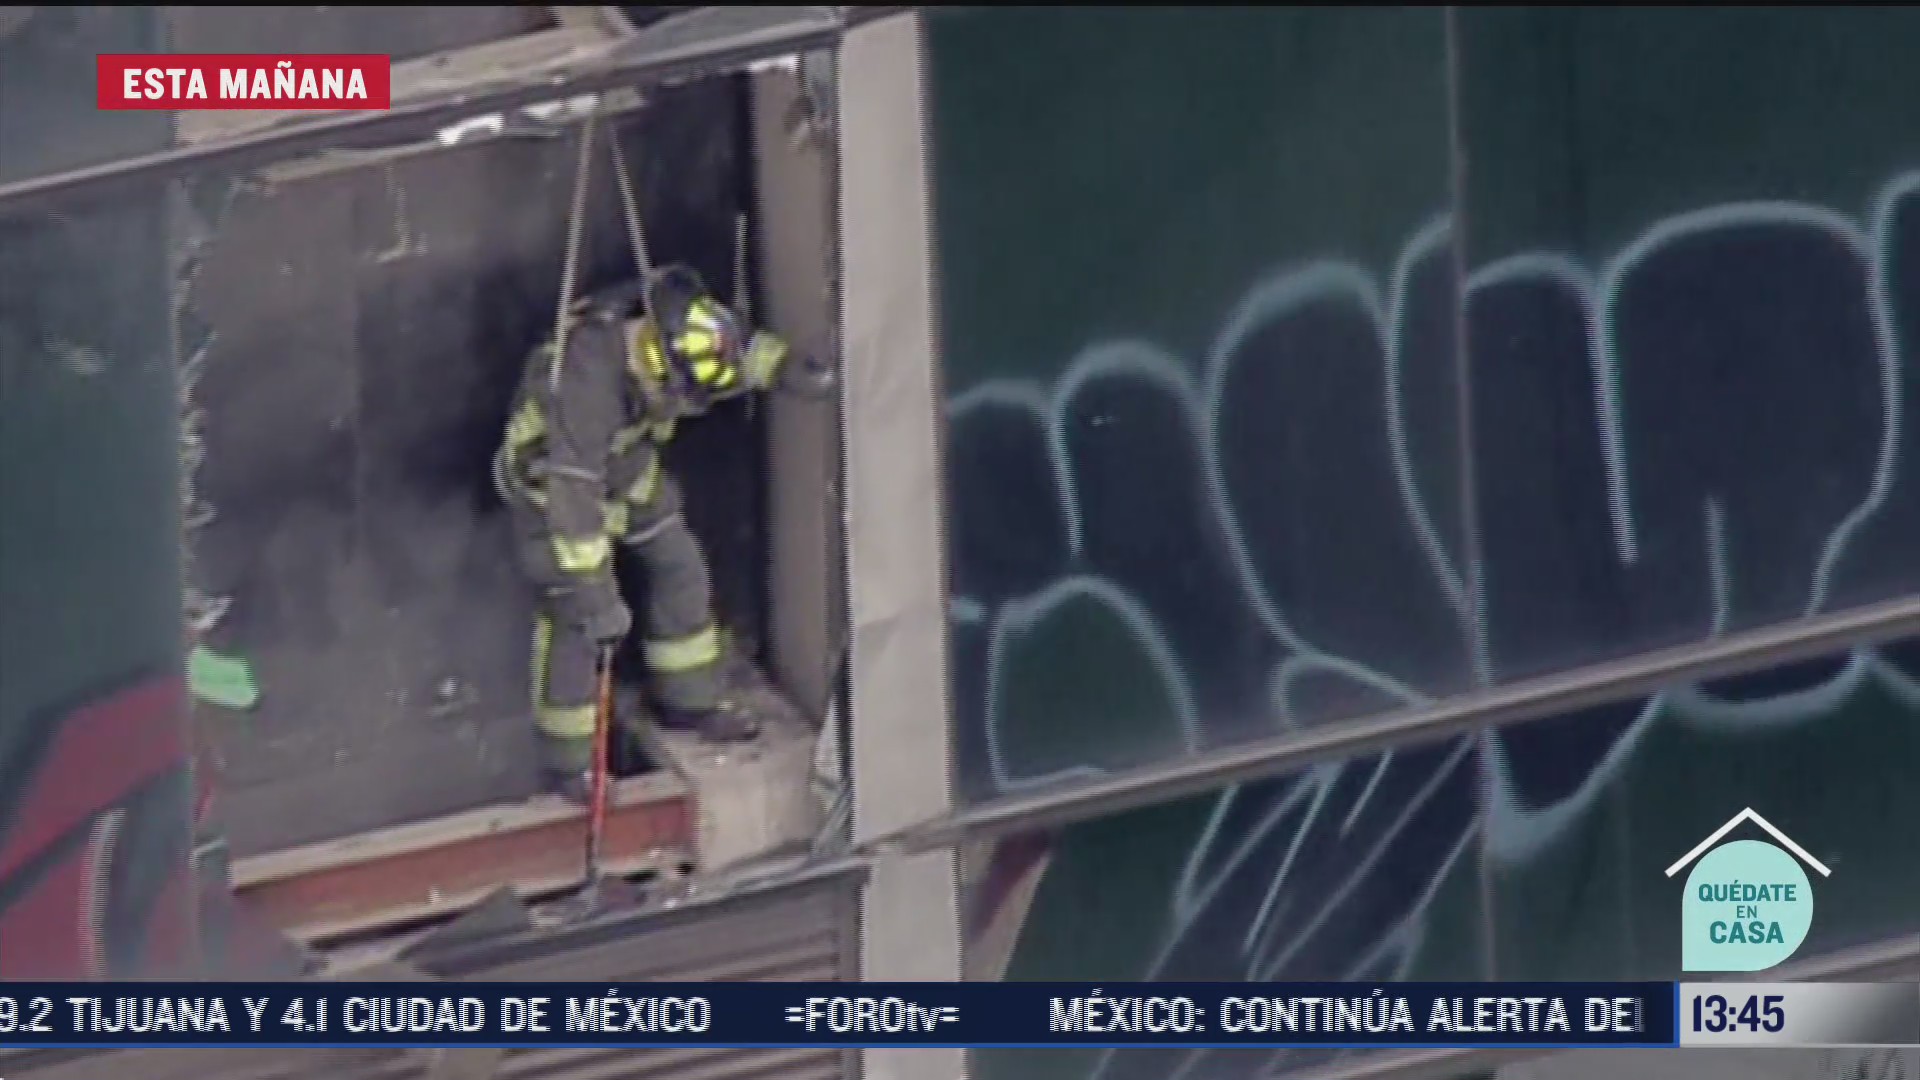 FOTO: bomberos auxilian a personas atrapadas en elevadores tras sismo en cdmx